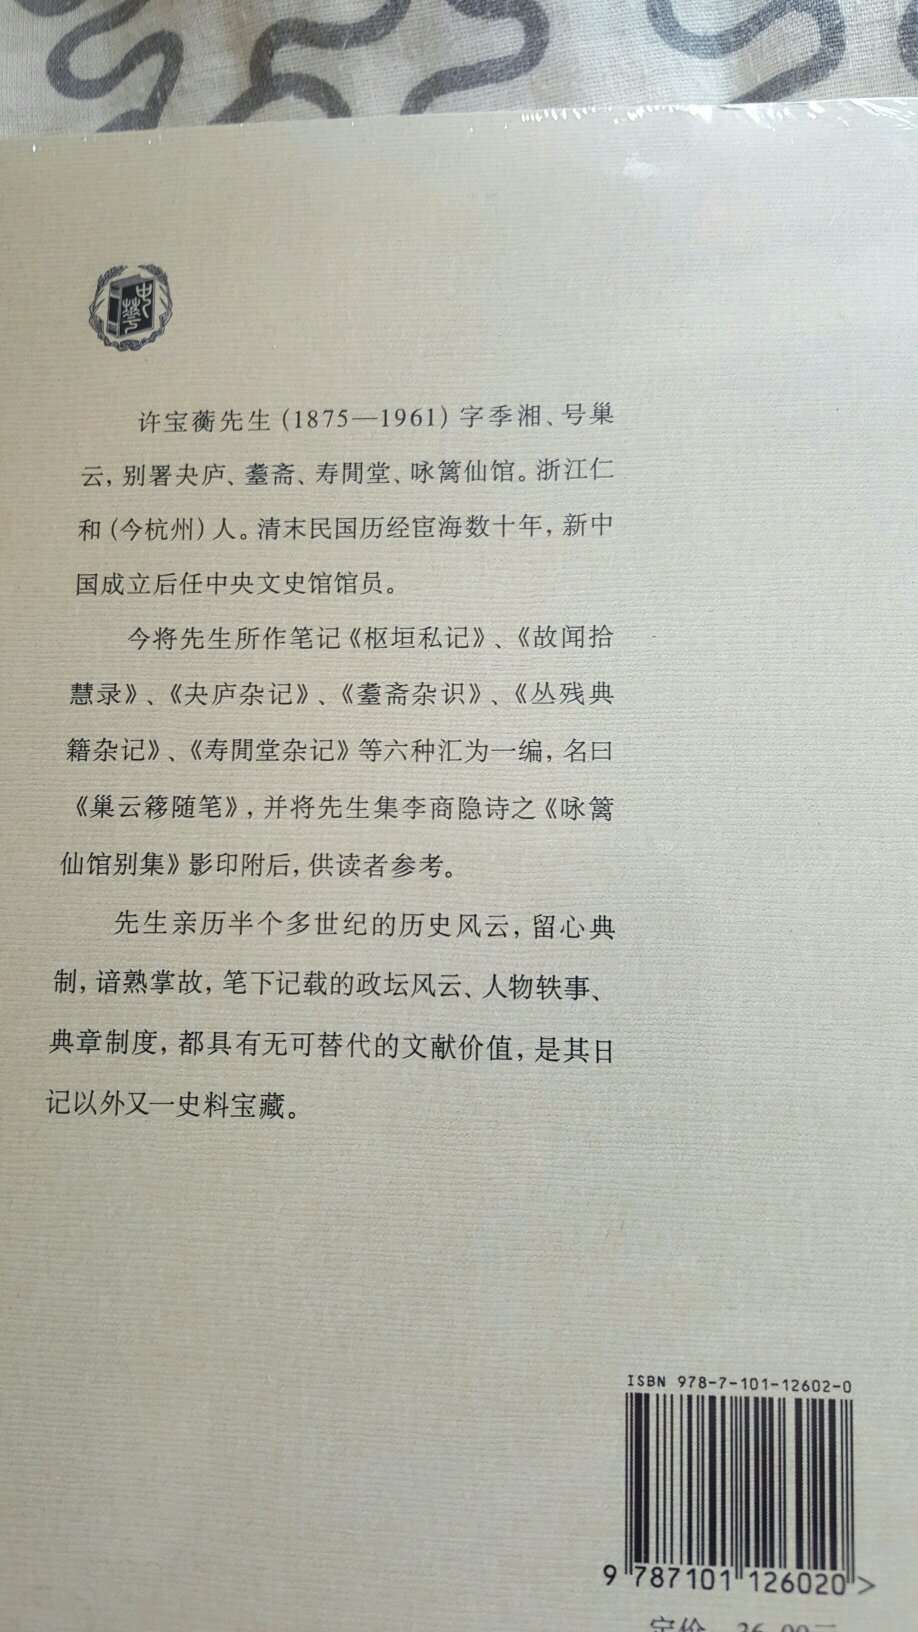 许先生日记已购入，中华的民国史料笔记也值得拥有。